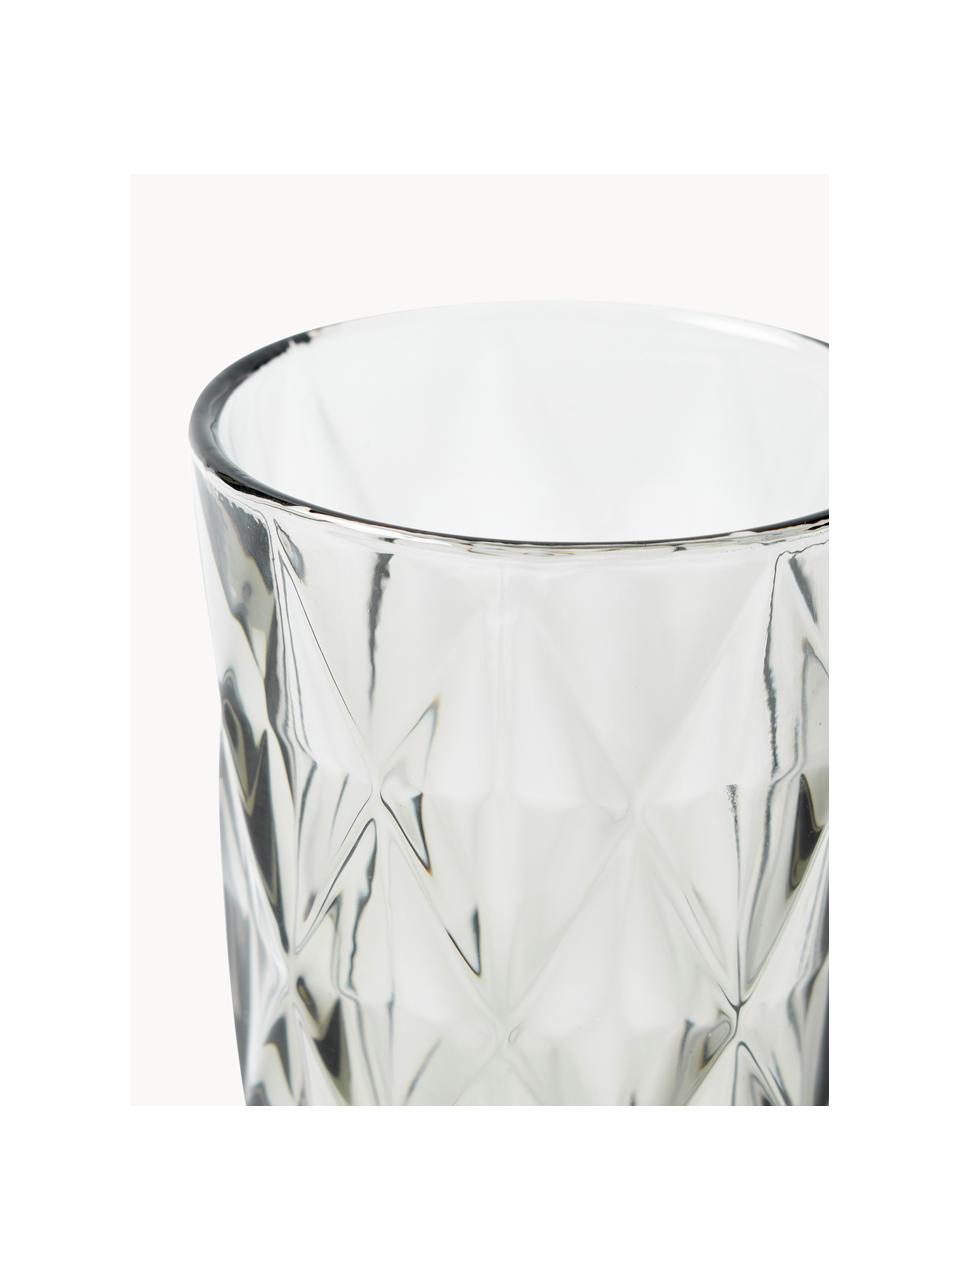 Longdrinkglazen Colorado met structuurpatroon, 4 stuks, Glas, Grijs, Ø 8 x H 13 cm, 310 ml